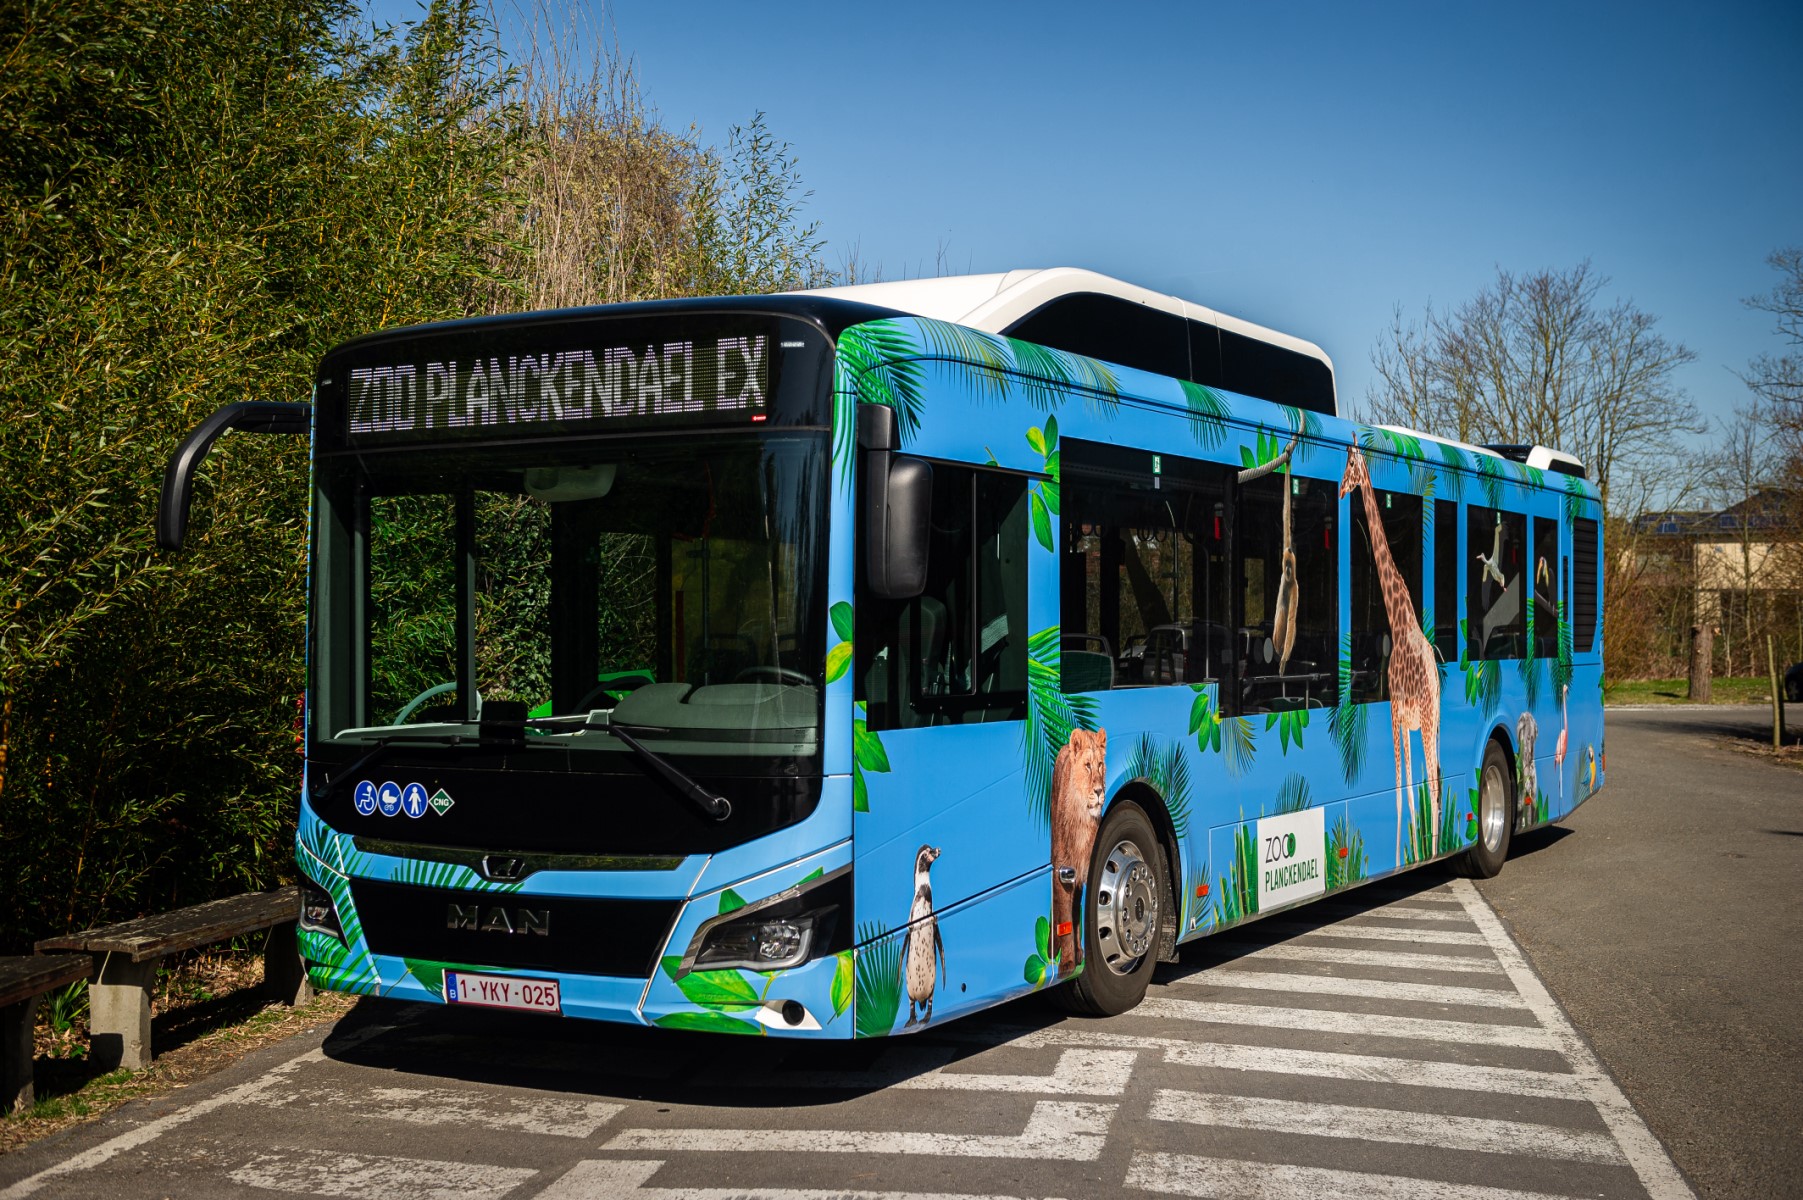 Kleinere ecologische voetafdruk voor ZOO Planckendael dankzij Hansea en de MAN CNG-bus